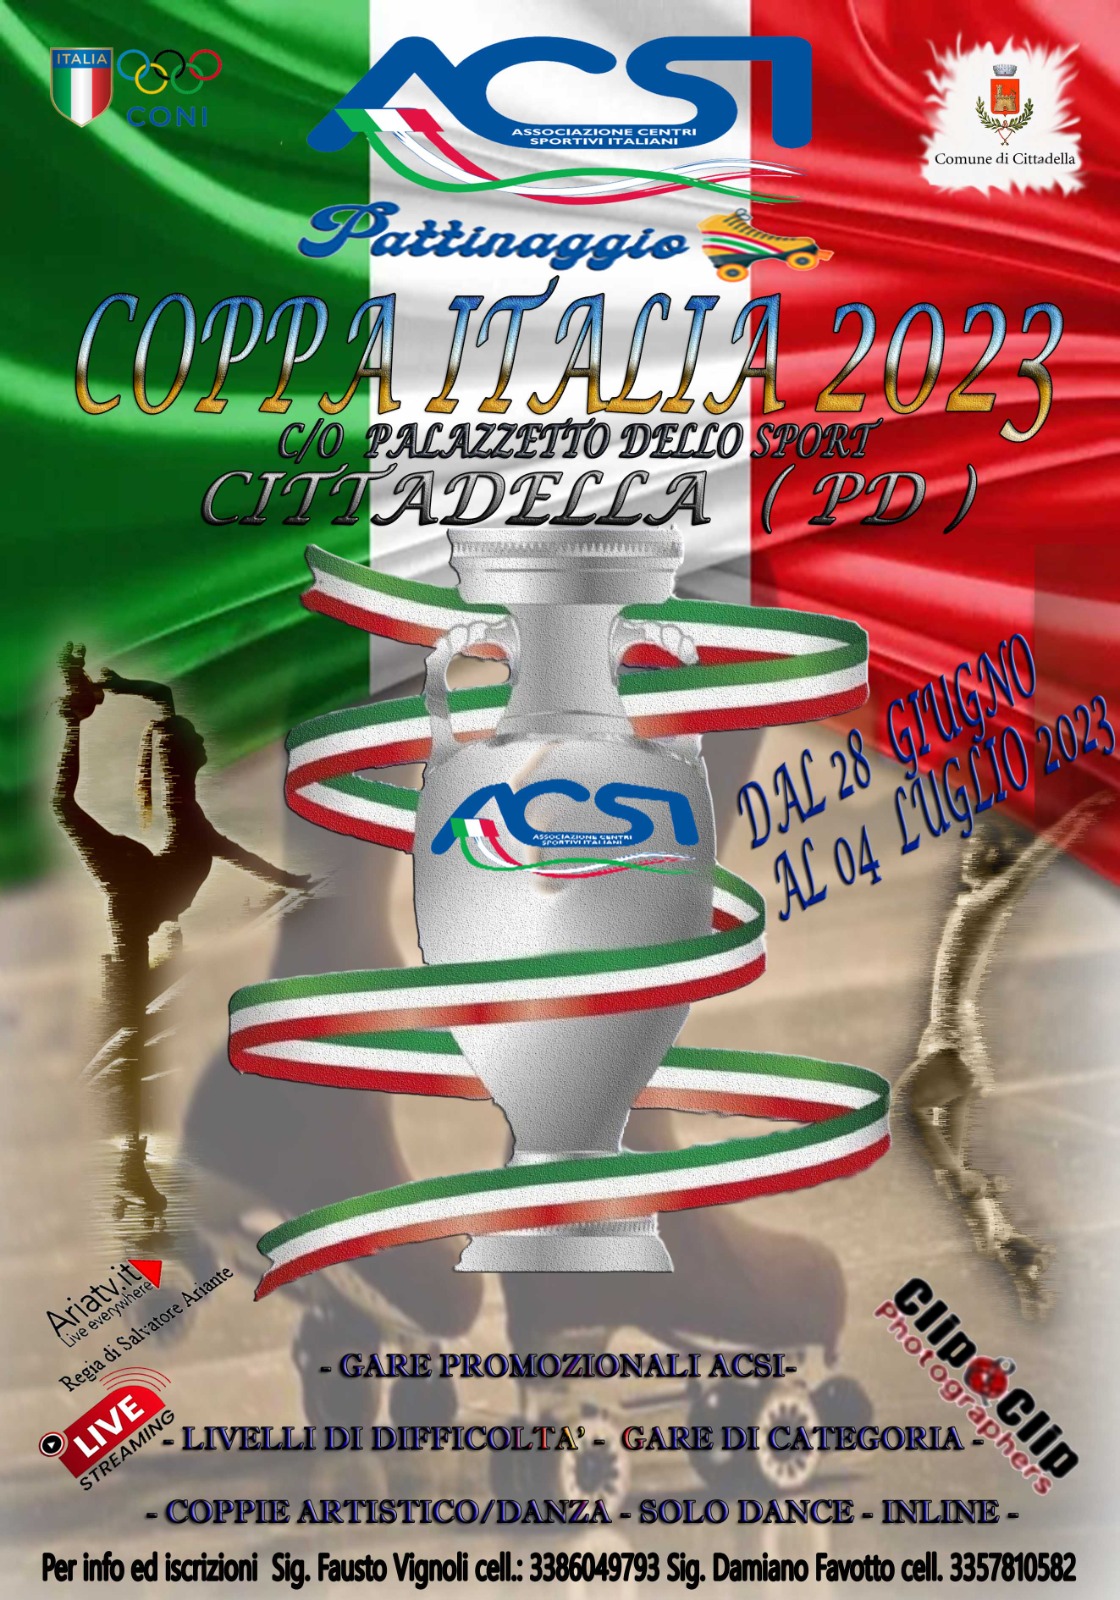 LogoCoppaItalia2023